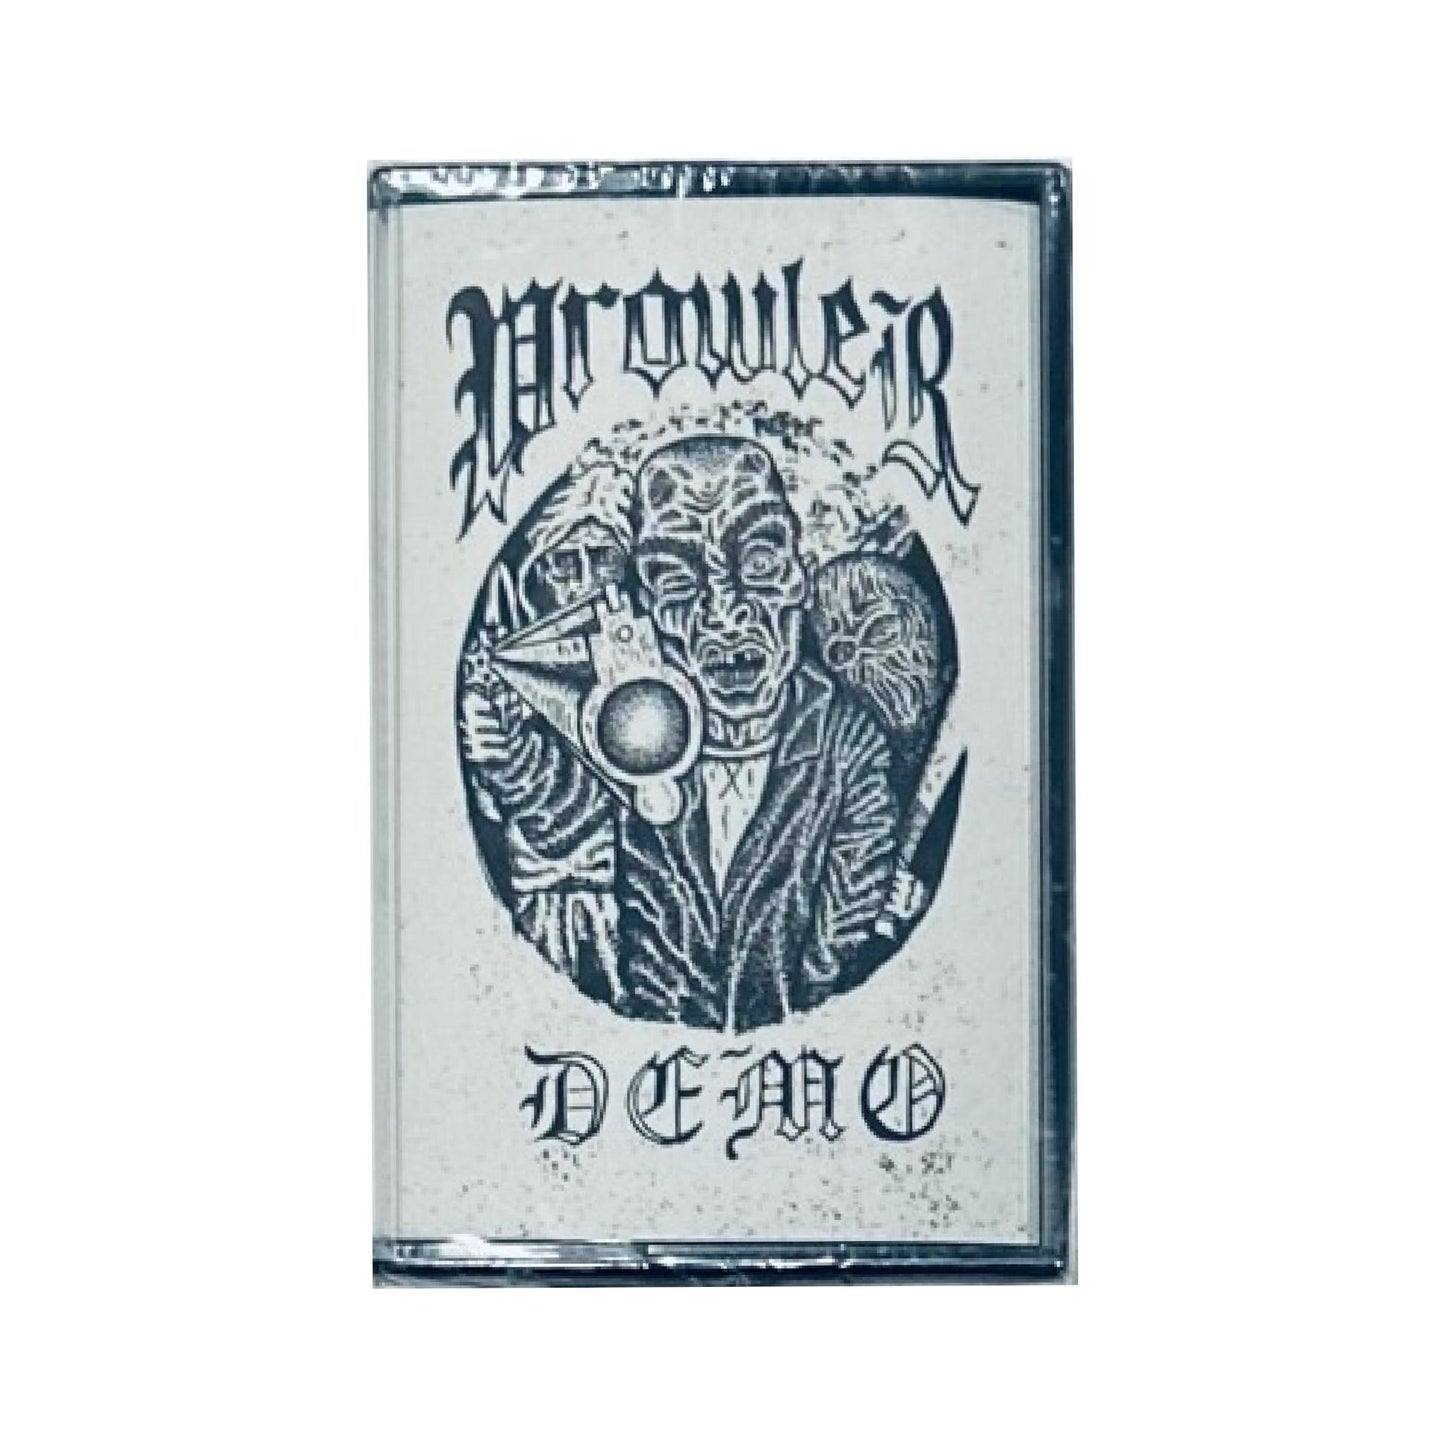 Prowler Demo CS (cassette tape)